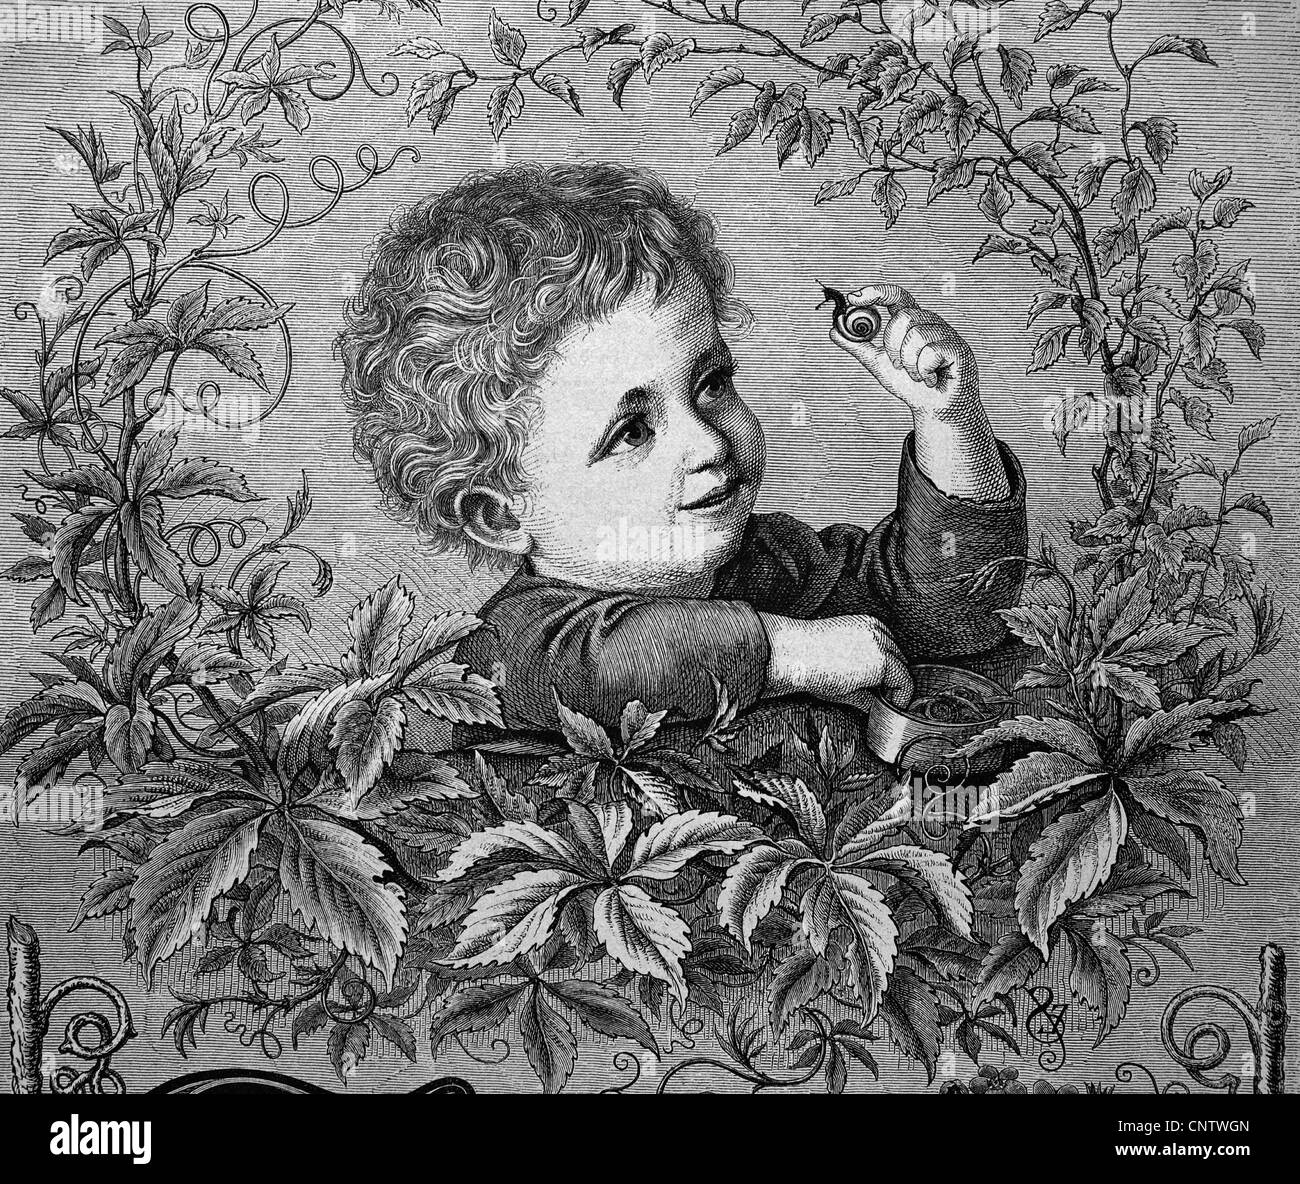 Jeune garçon à la recherche d'un escargot, gravure historique, 1869 Banque D'Images